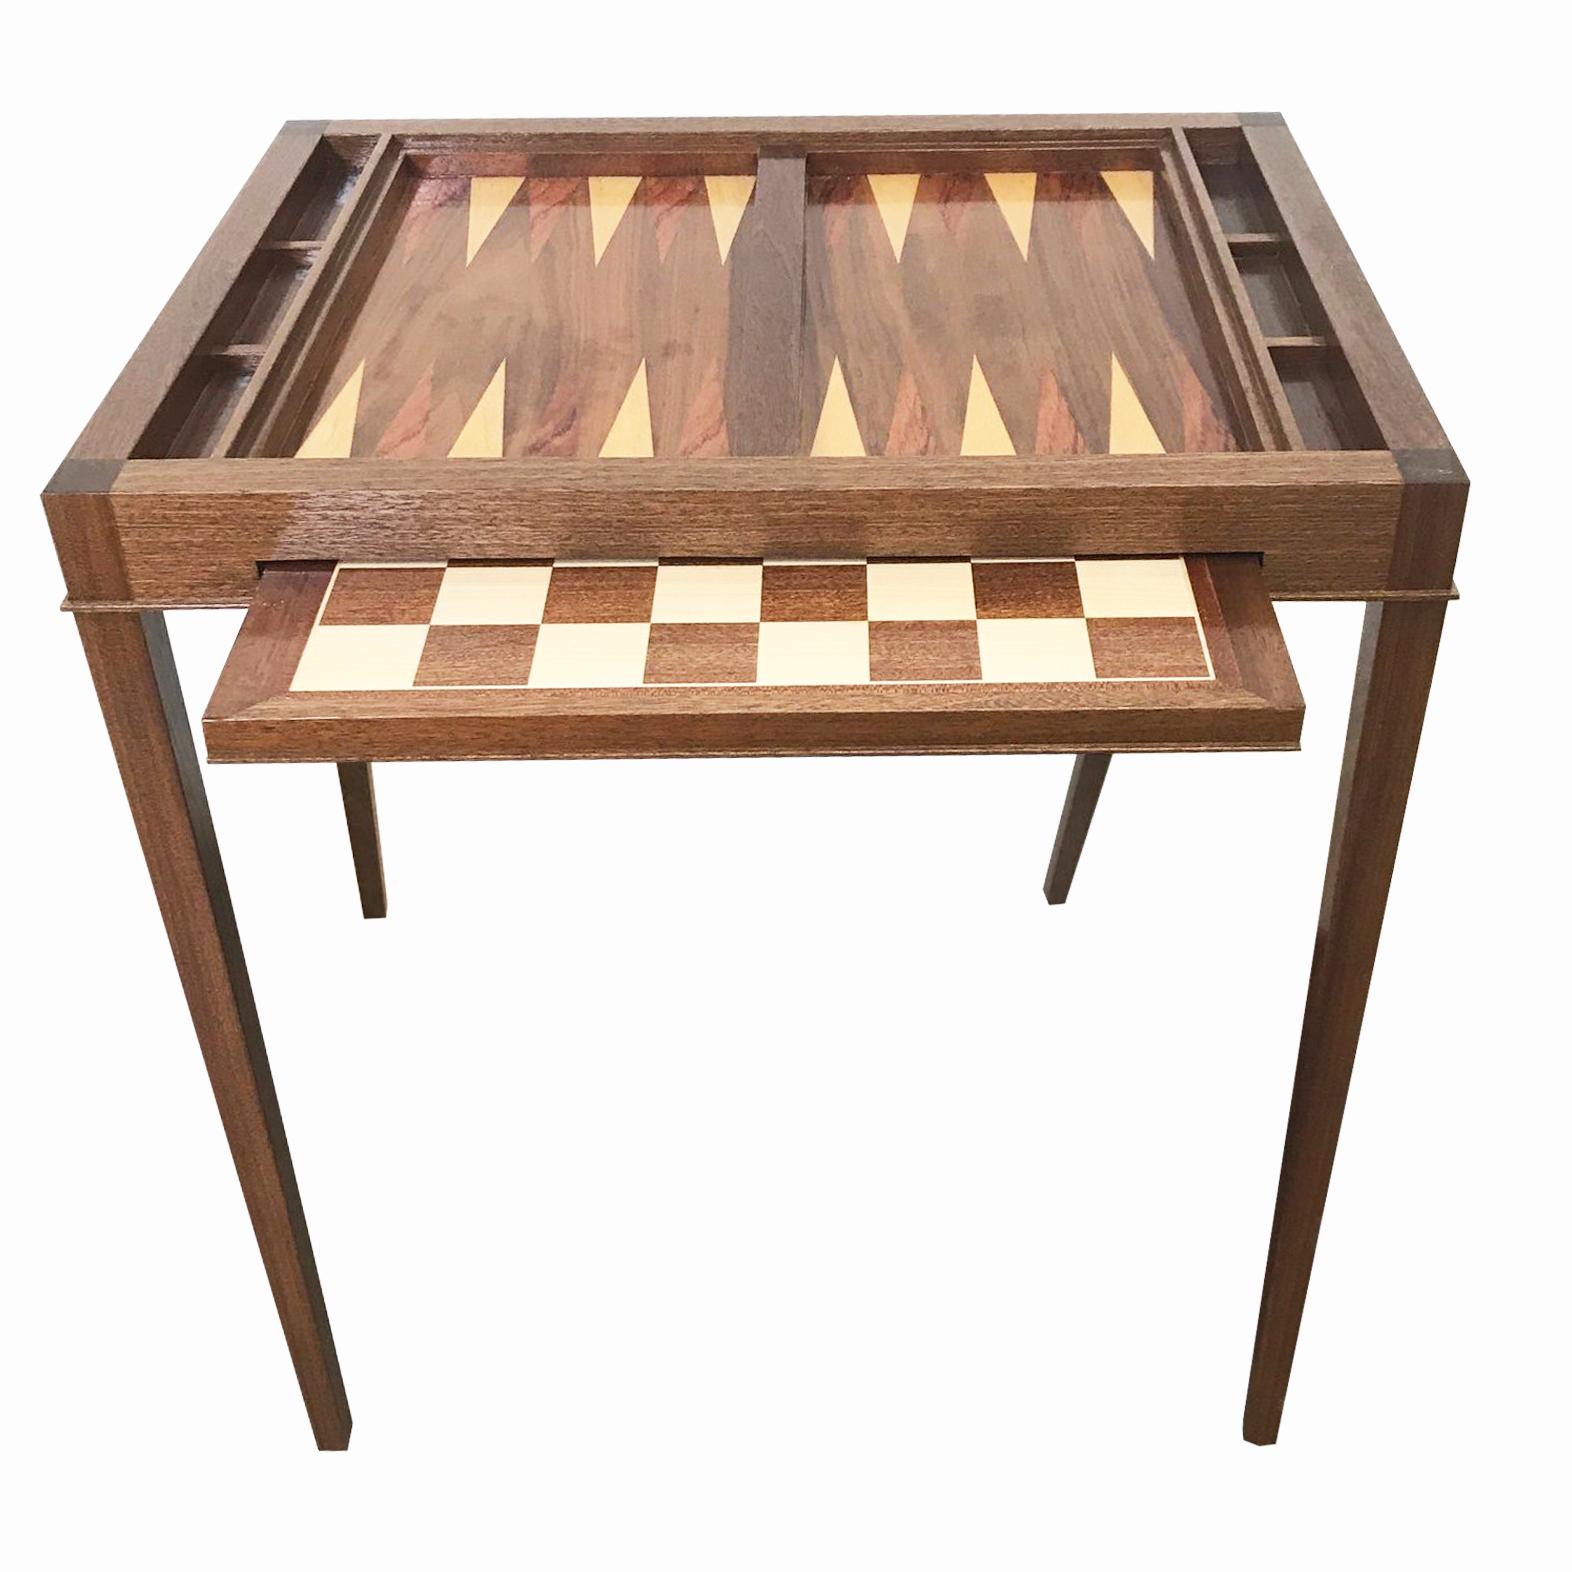 Verkauft. Ein neues Angebot wird gerade veröffentlicht. Maßgefertigter Backgammon-Tisch aus Nussbaumholz, der sich mit einem ausziehbaren Brett in Schach verwandeln lässt. 

Neue Produktion. Auf Bestellung in Nussbaum oder Mahagoni gefertigt.